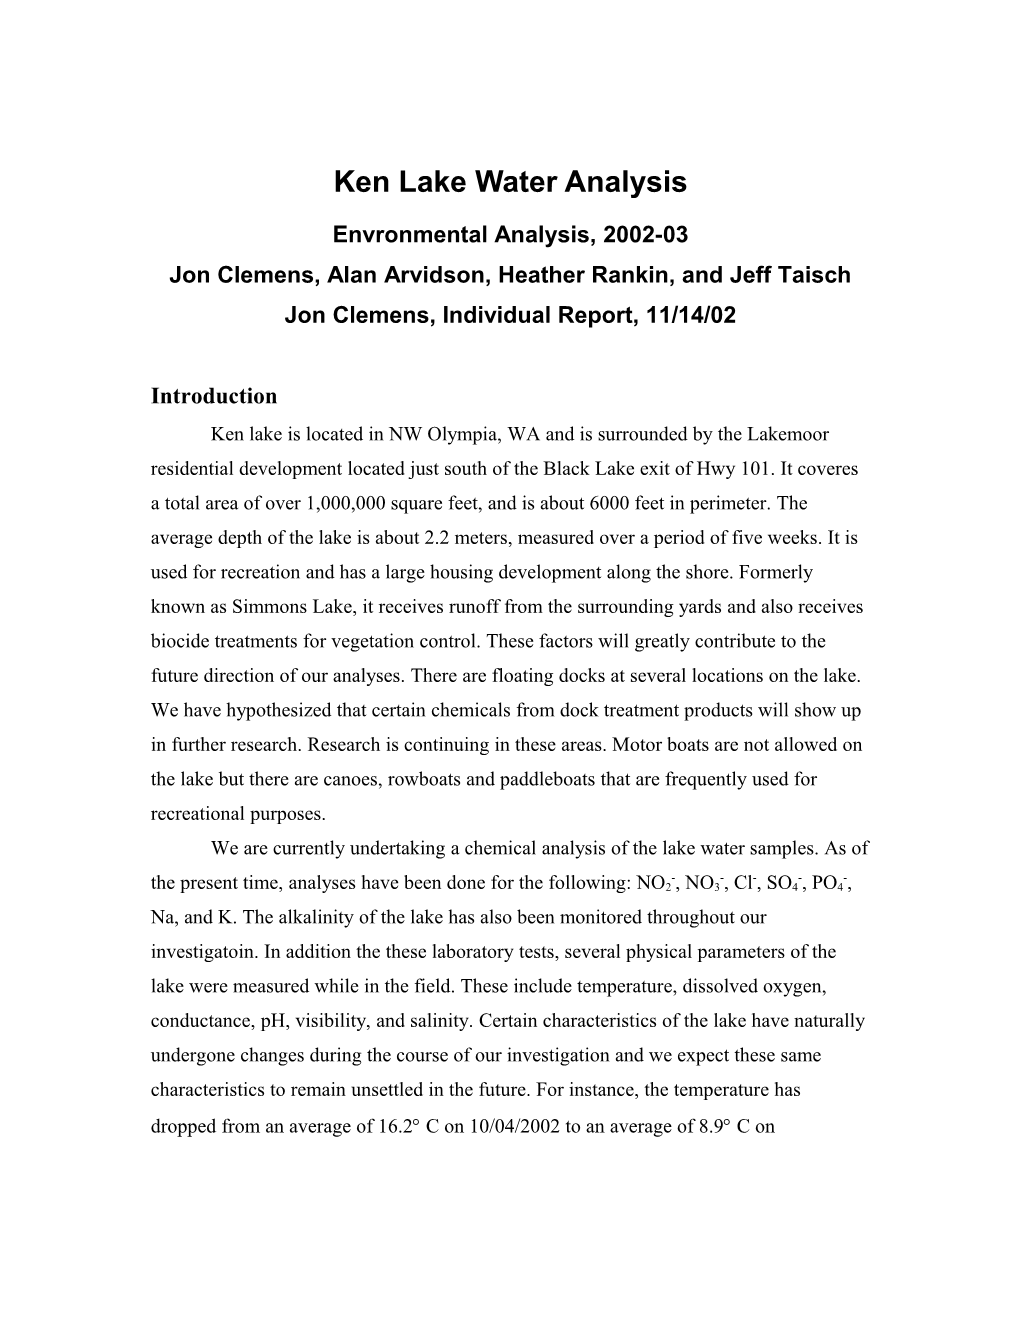 Atomic Absorption Analysis of Ken Lake Water